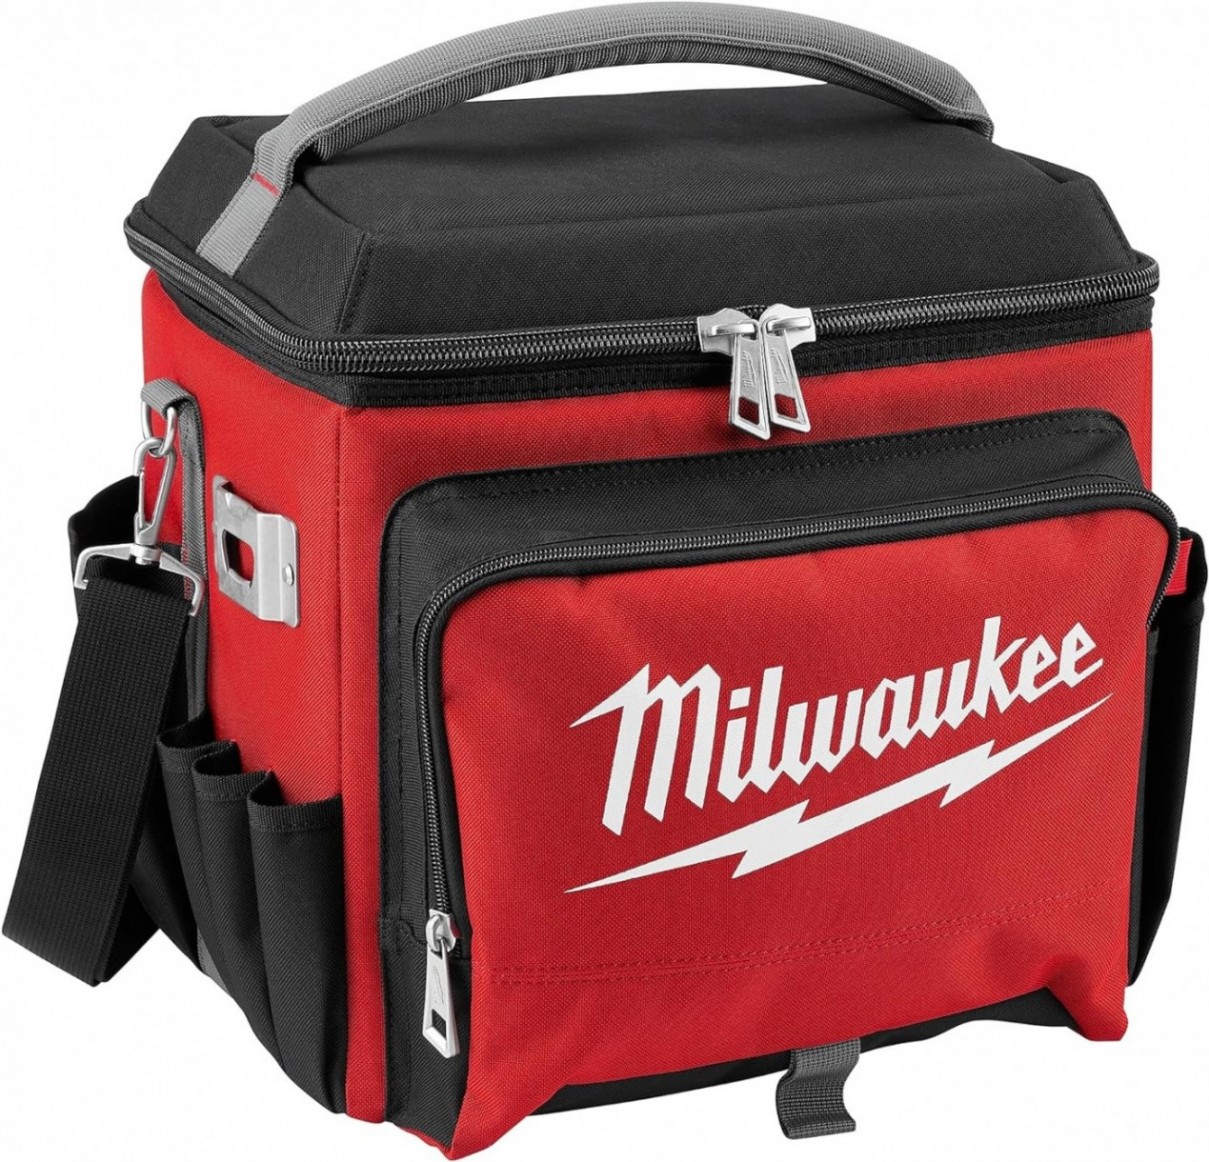 Milwaukee Jobsite Cooler